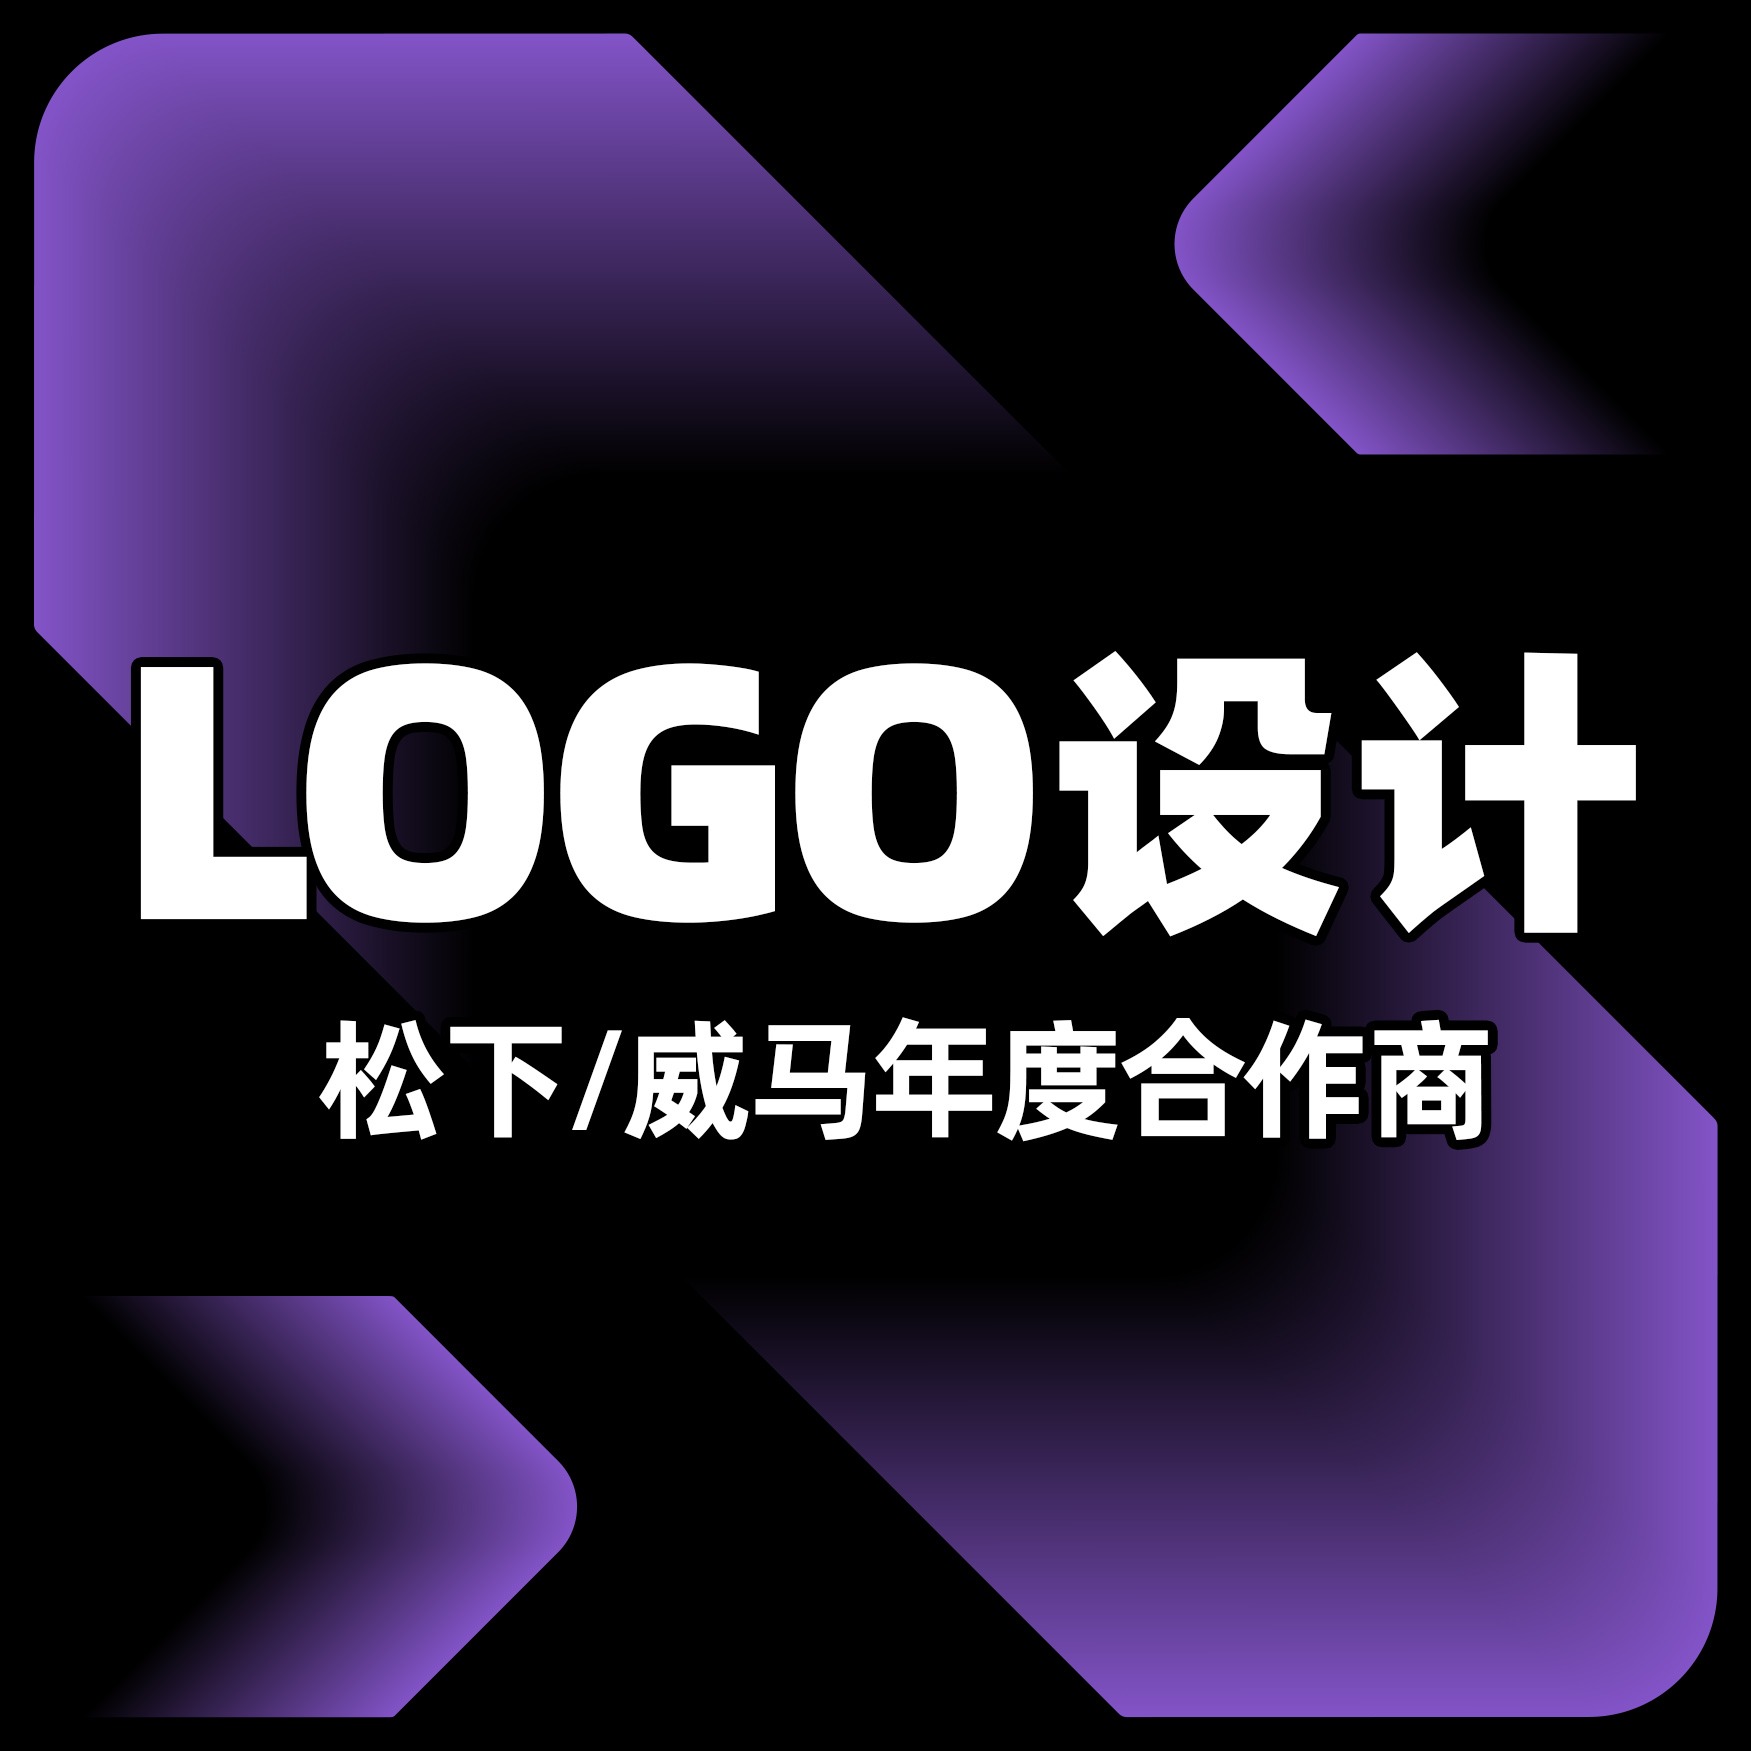 企业logo设计旅游酒店环保**地产汽车平面品牌商标升级设计